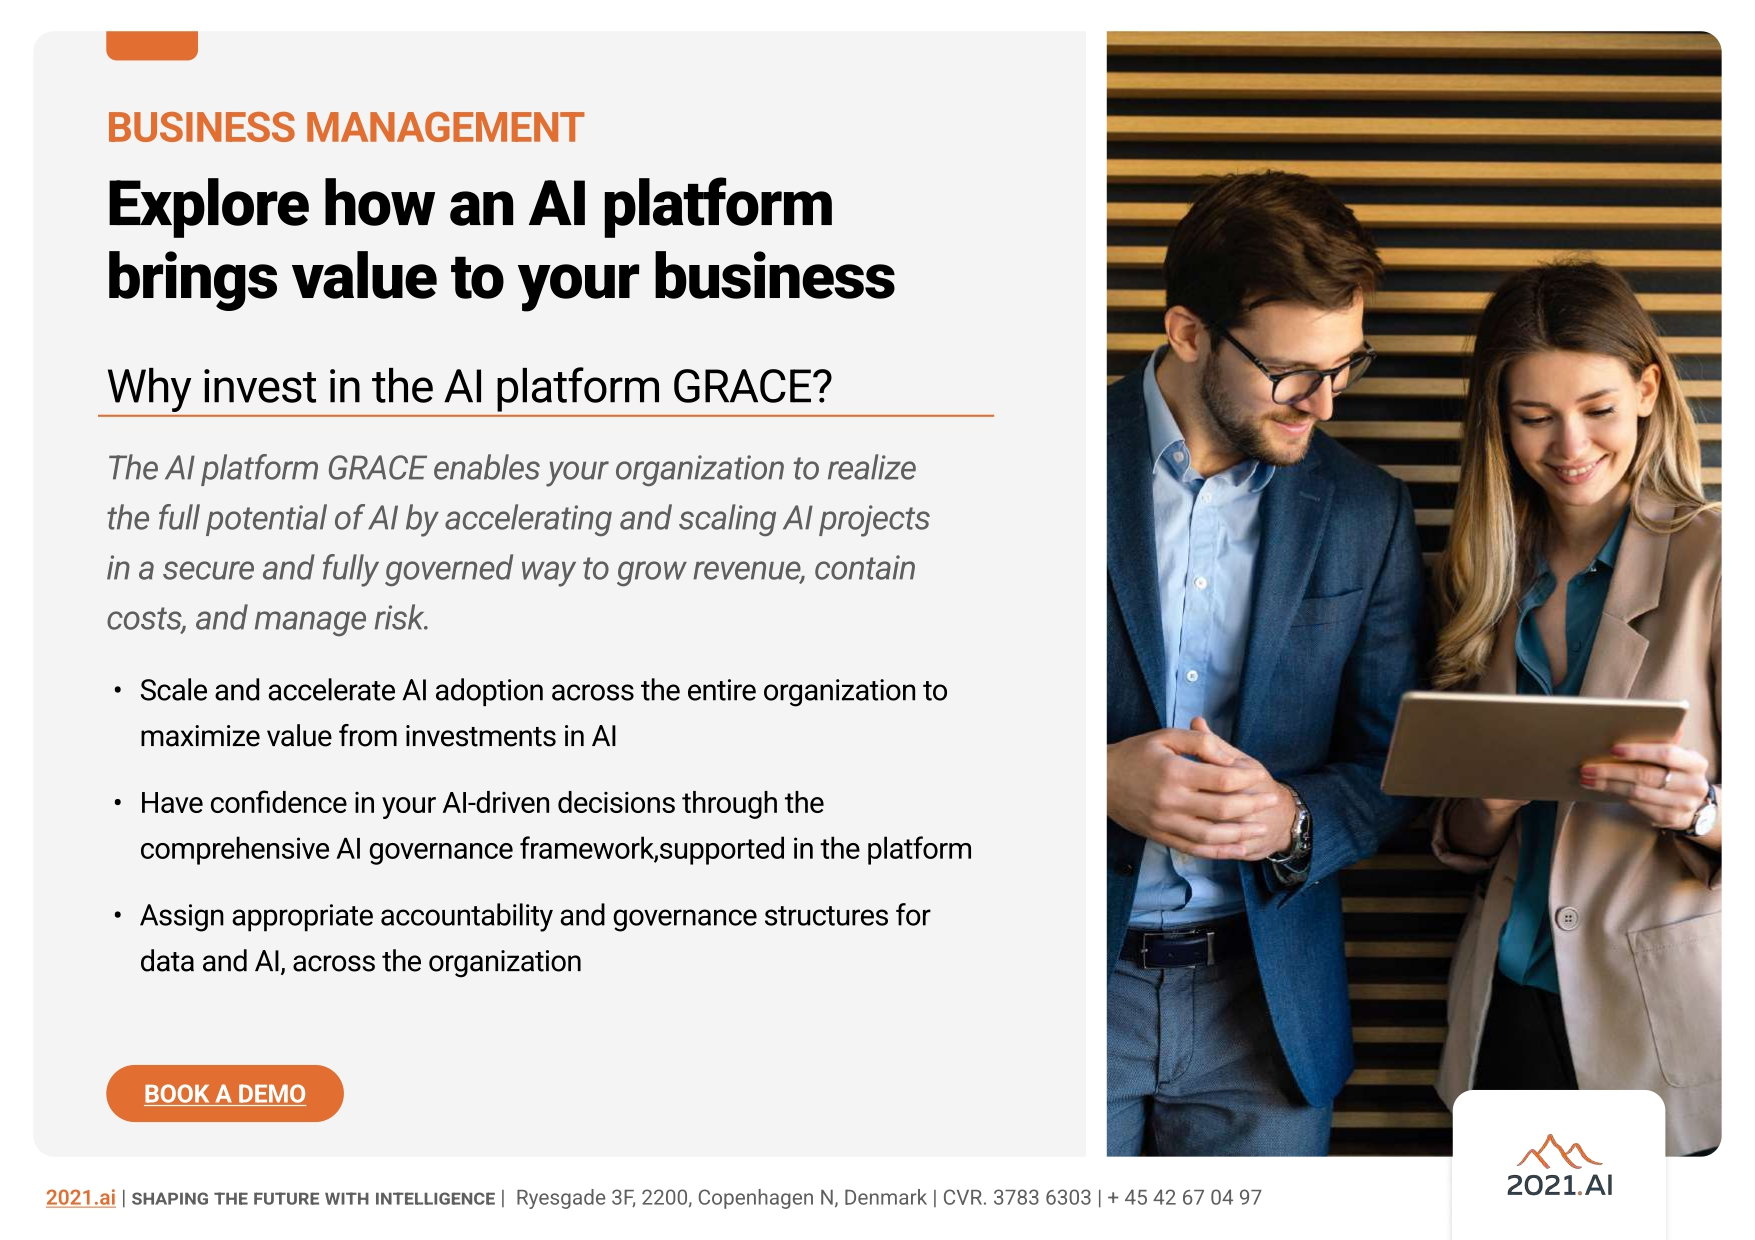 GRACE AI Platform for business management